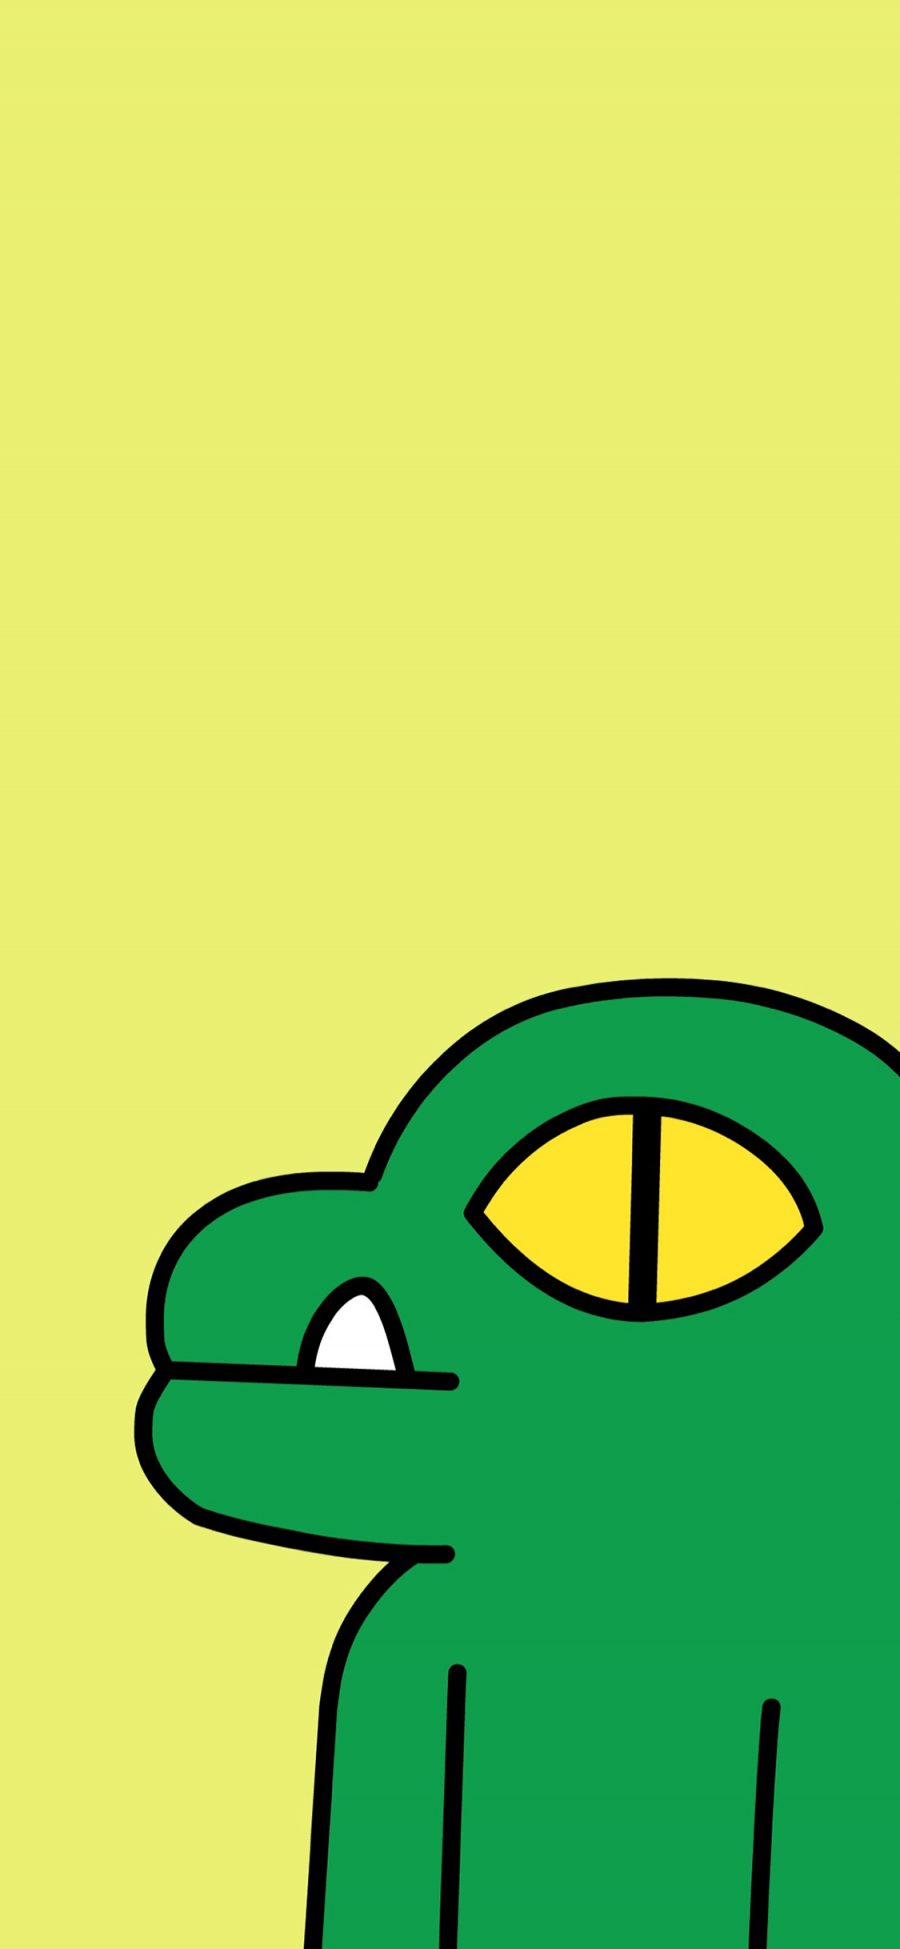 [2436×1125]黄色背景 恐龙 绿色 苹果手机动漫壁纸图片